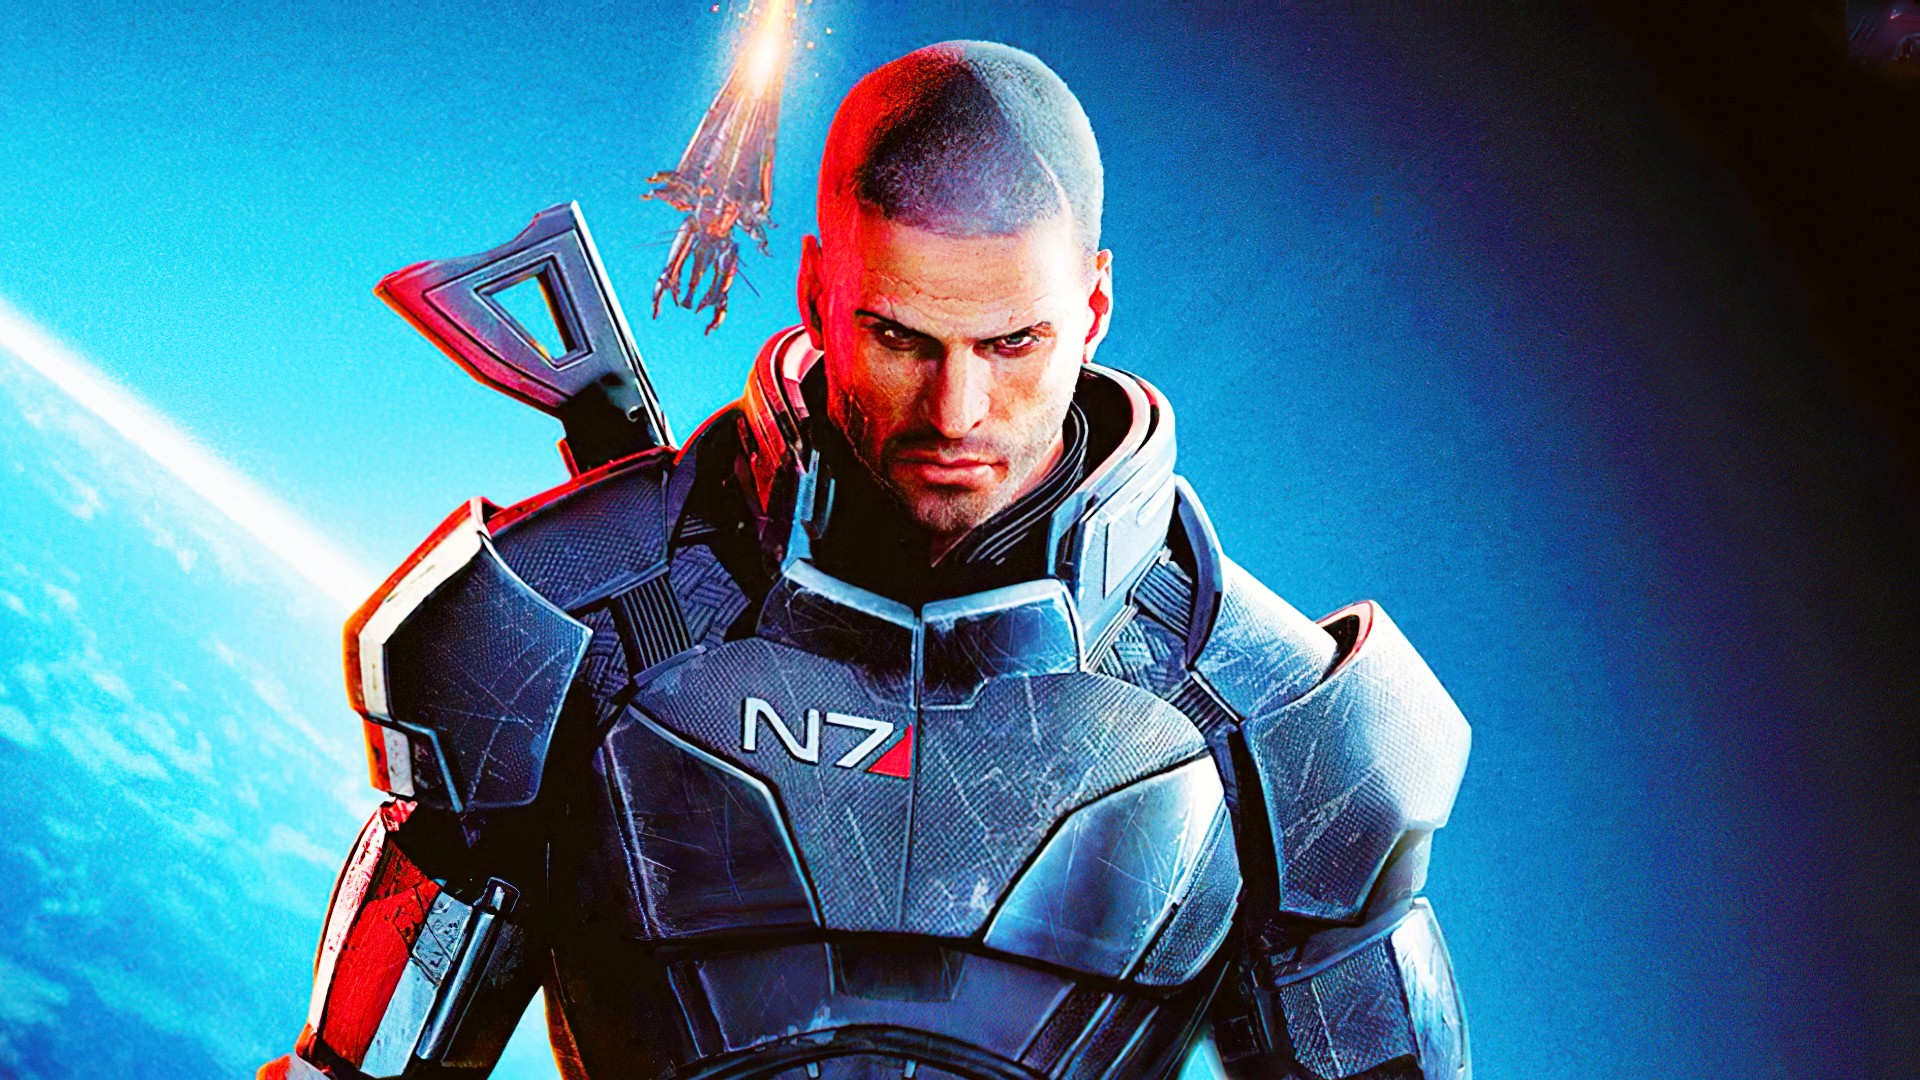 Mass Effect 3 ending originally led to ME4, says ex-BioWare writer